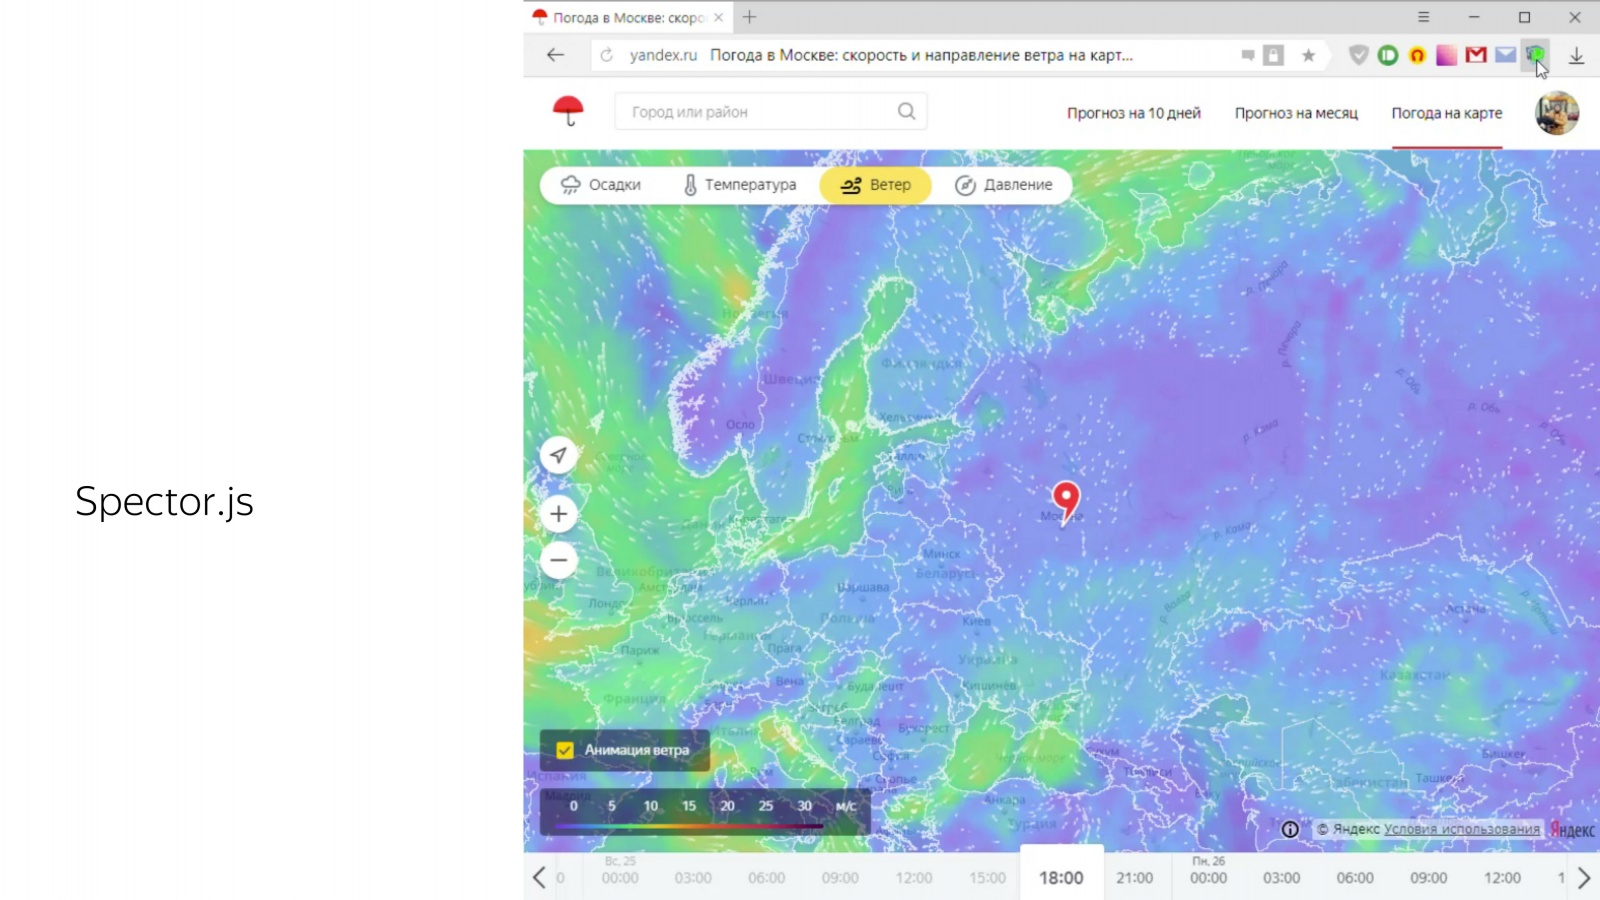 Дождь на карте в реальном времени москва